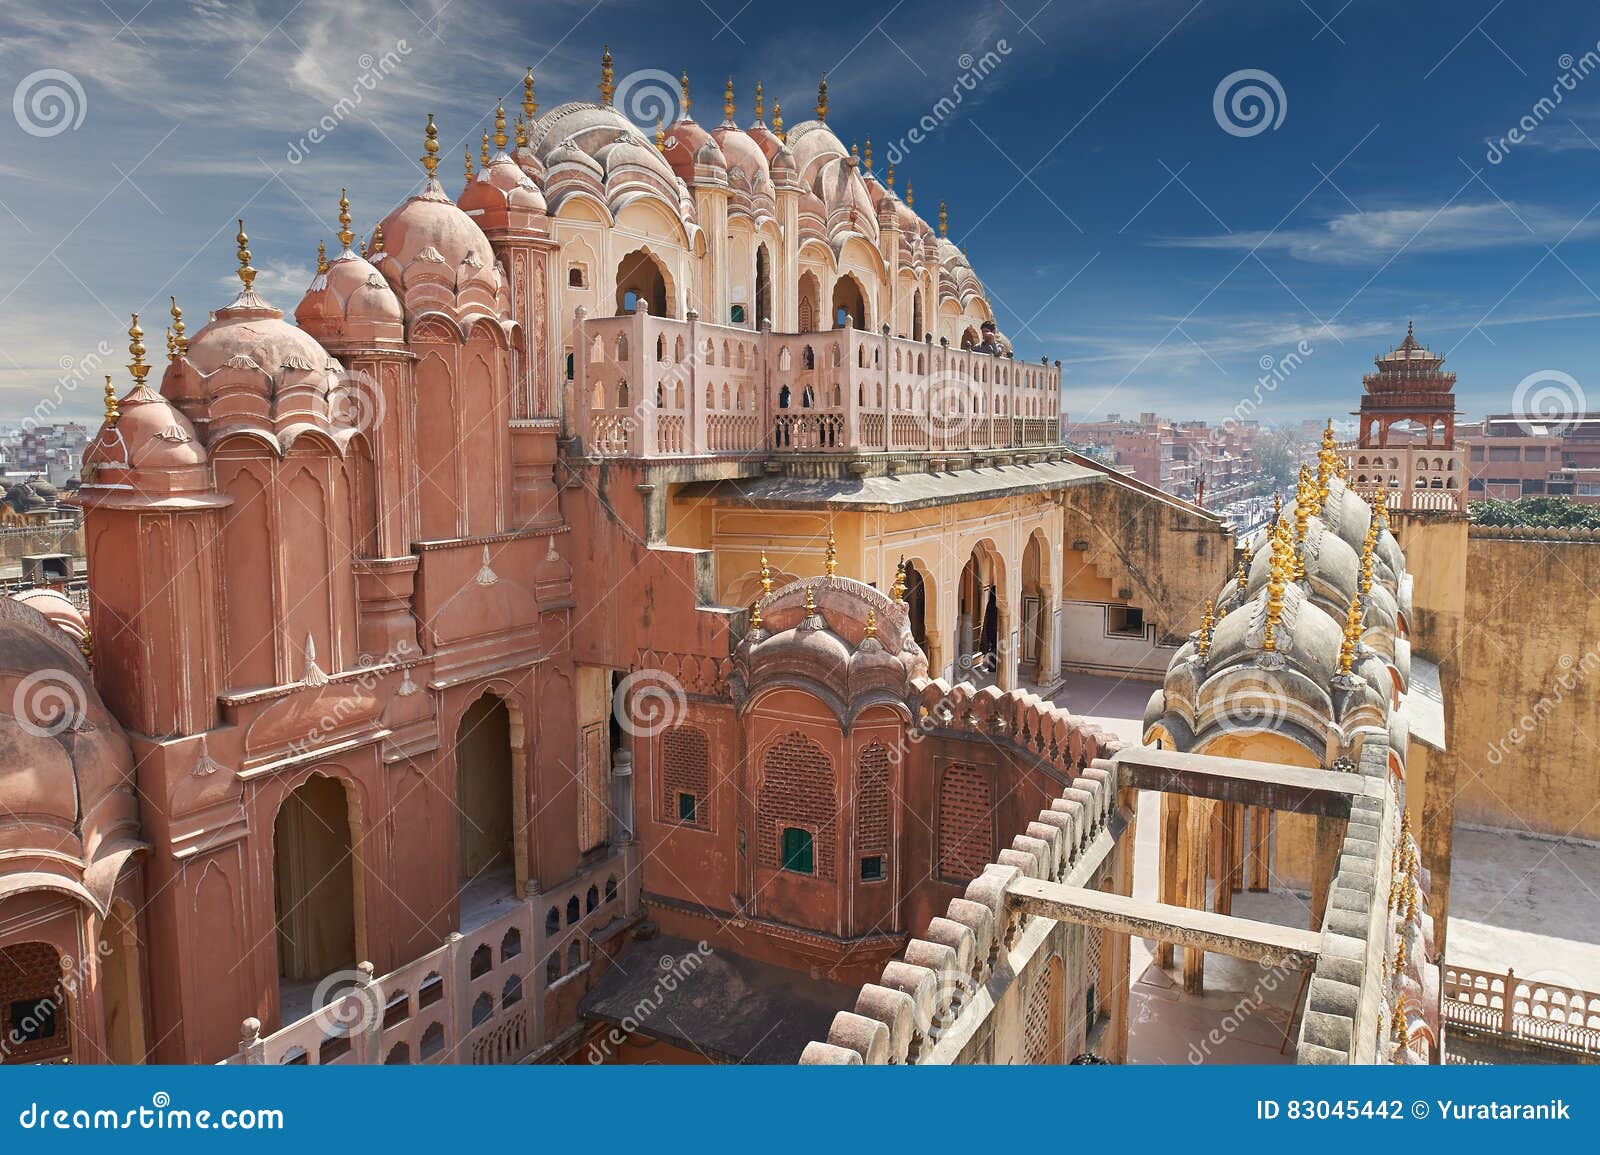 hawa mahal, the palace of winds, jaipur, rajasthan, india